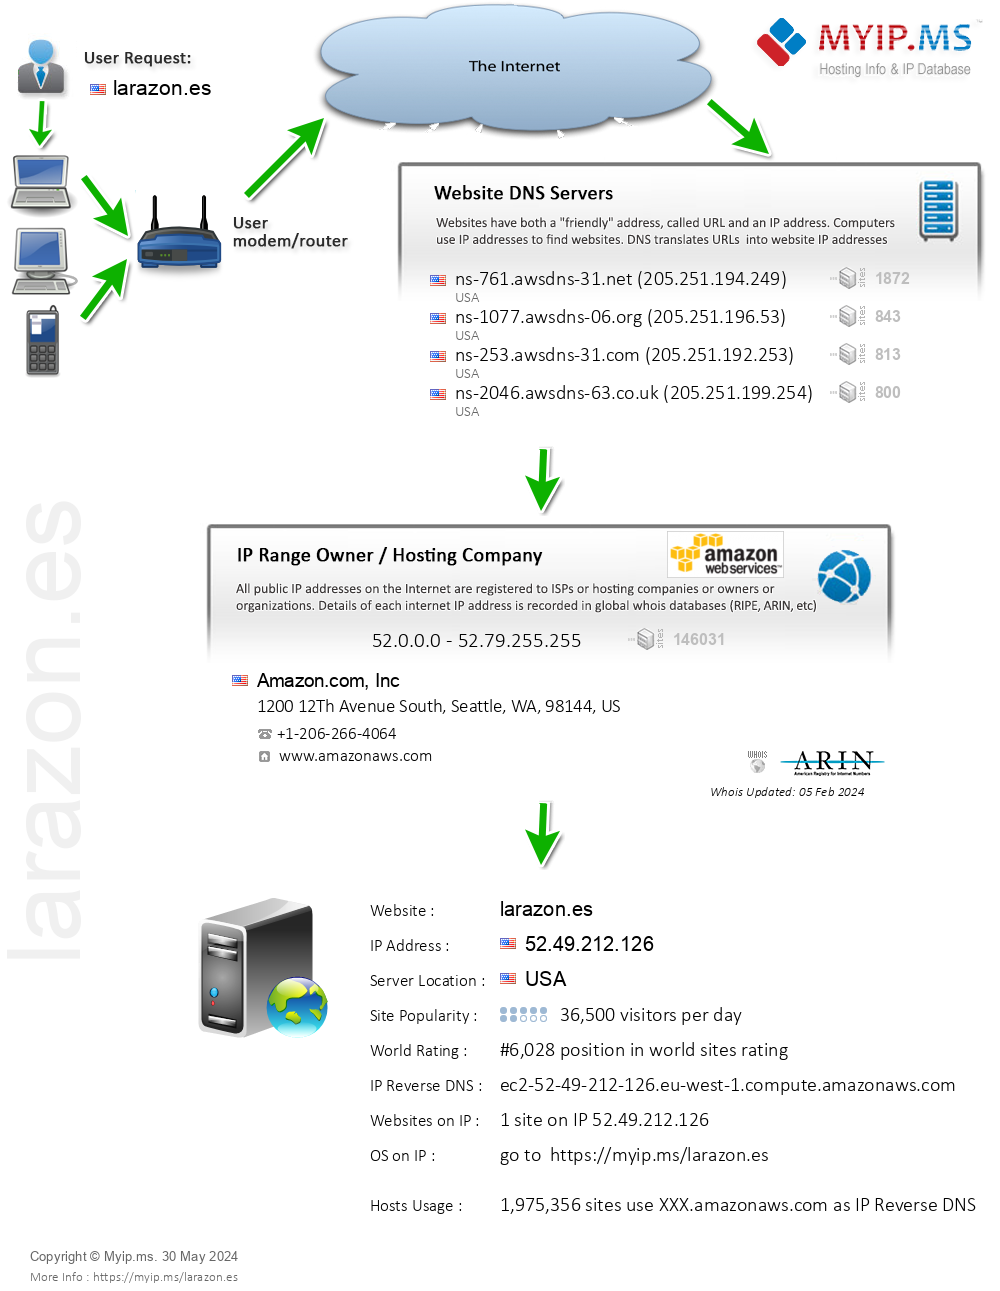 Larazon.es - Website Hosting Visual IP Diagram